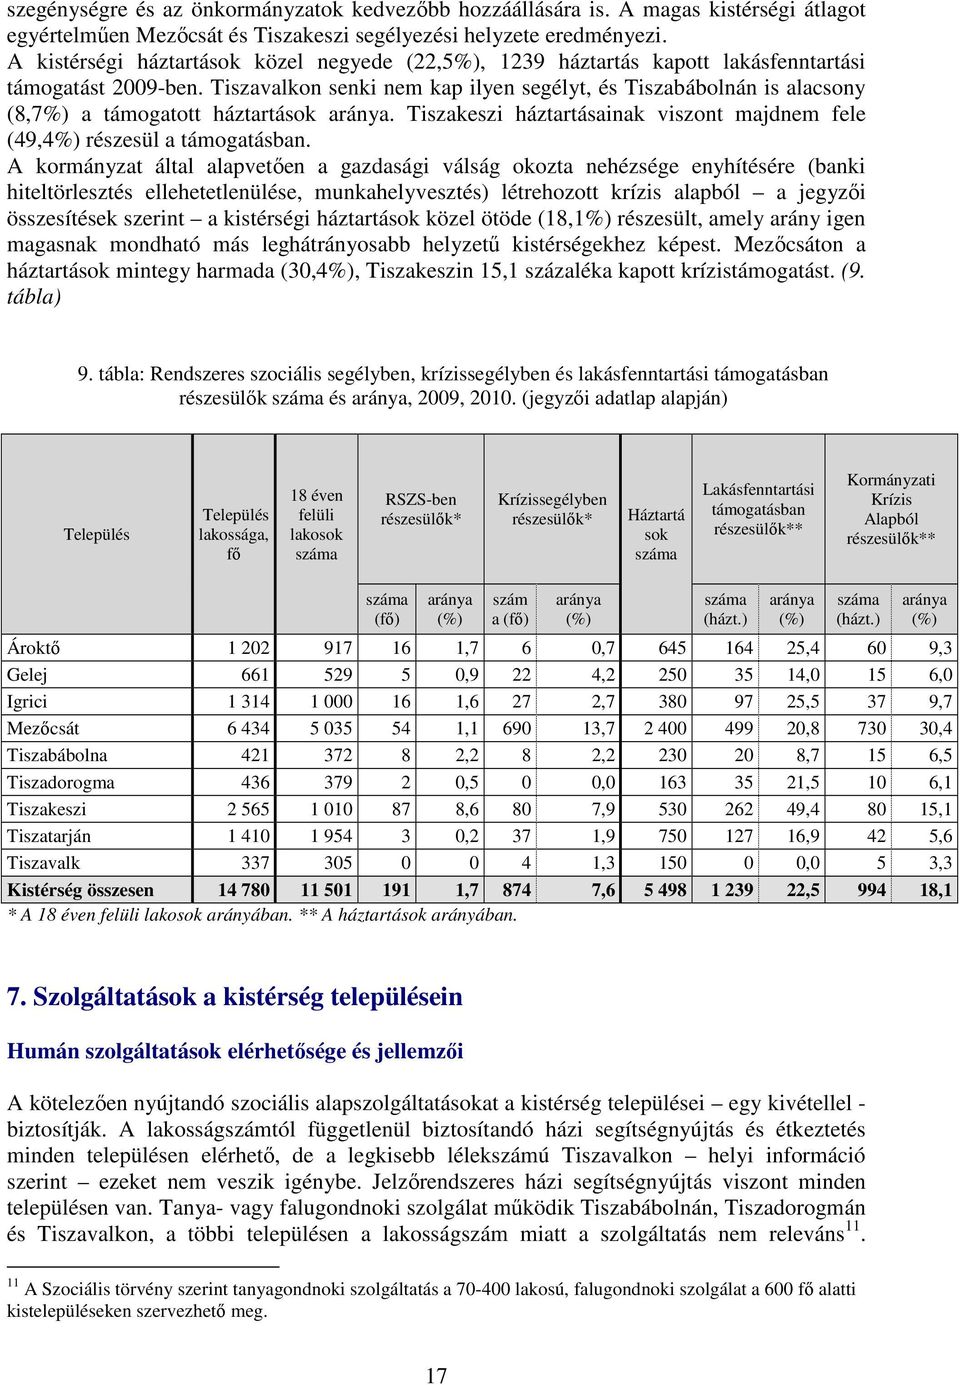 Tiszavalkon senki nem kap ilyen segélyt, és Tiszabábolnán is alacsony (8,7%) a támogatott háztartások aránya. Tiszakeszi háztartásainak viszont majdnem fele (49,4%) részesül a támogatásban.